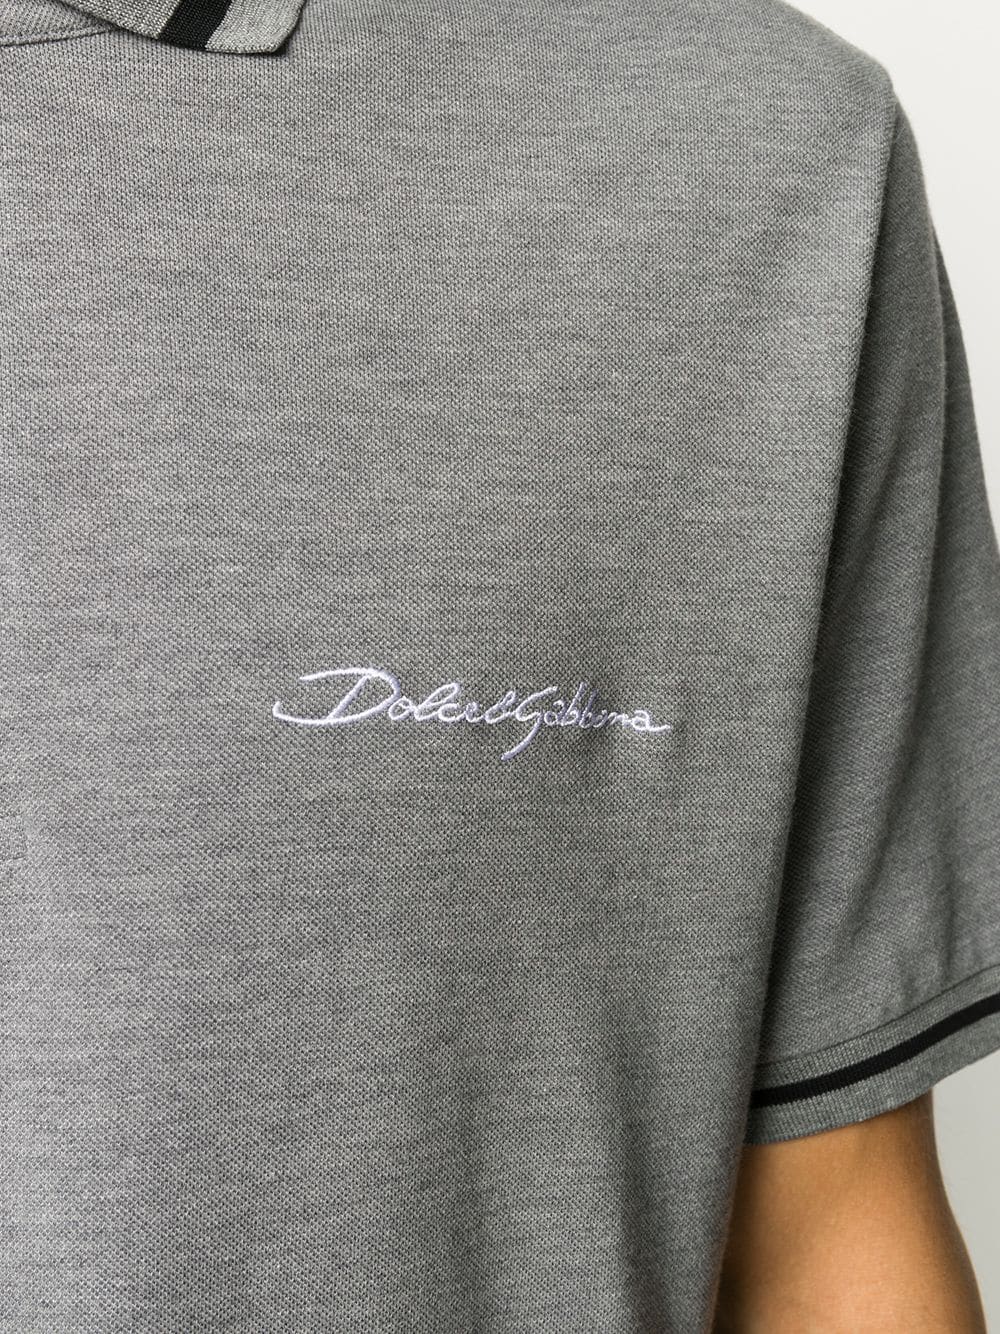 фото Dolce & gabbana рубашка поло с вышитым логотипом